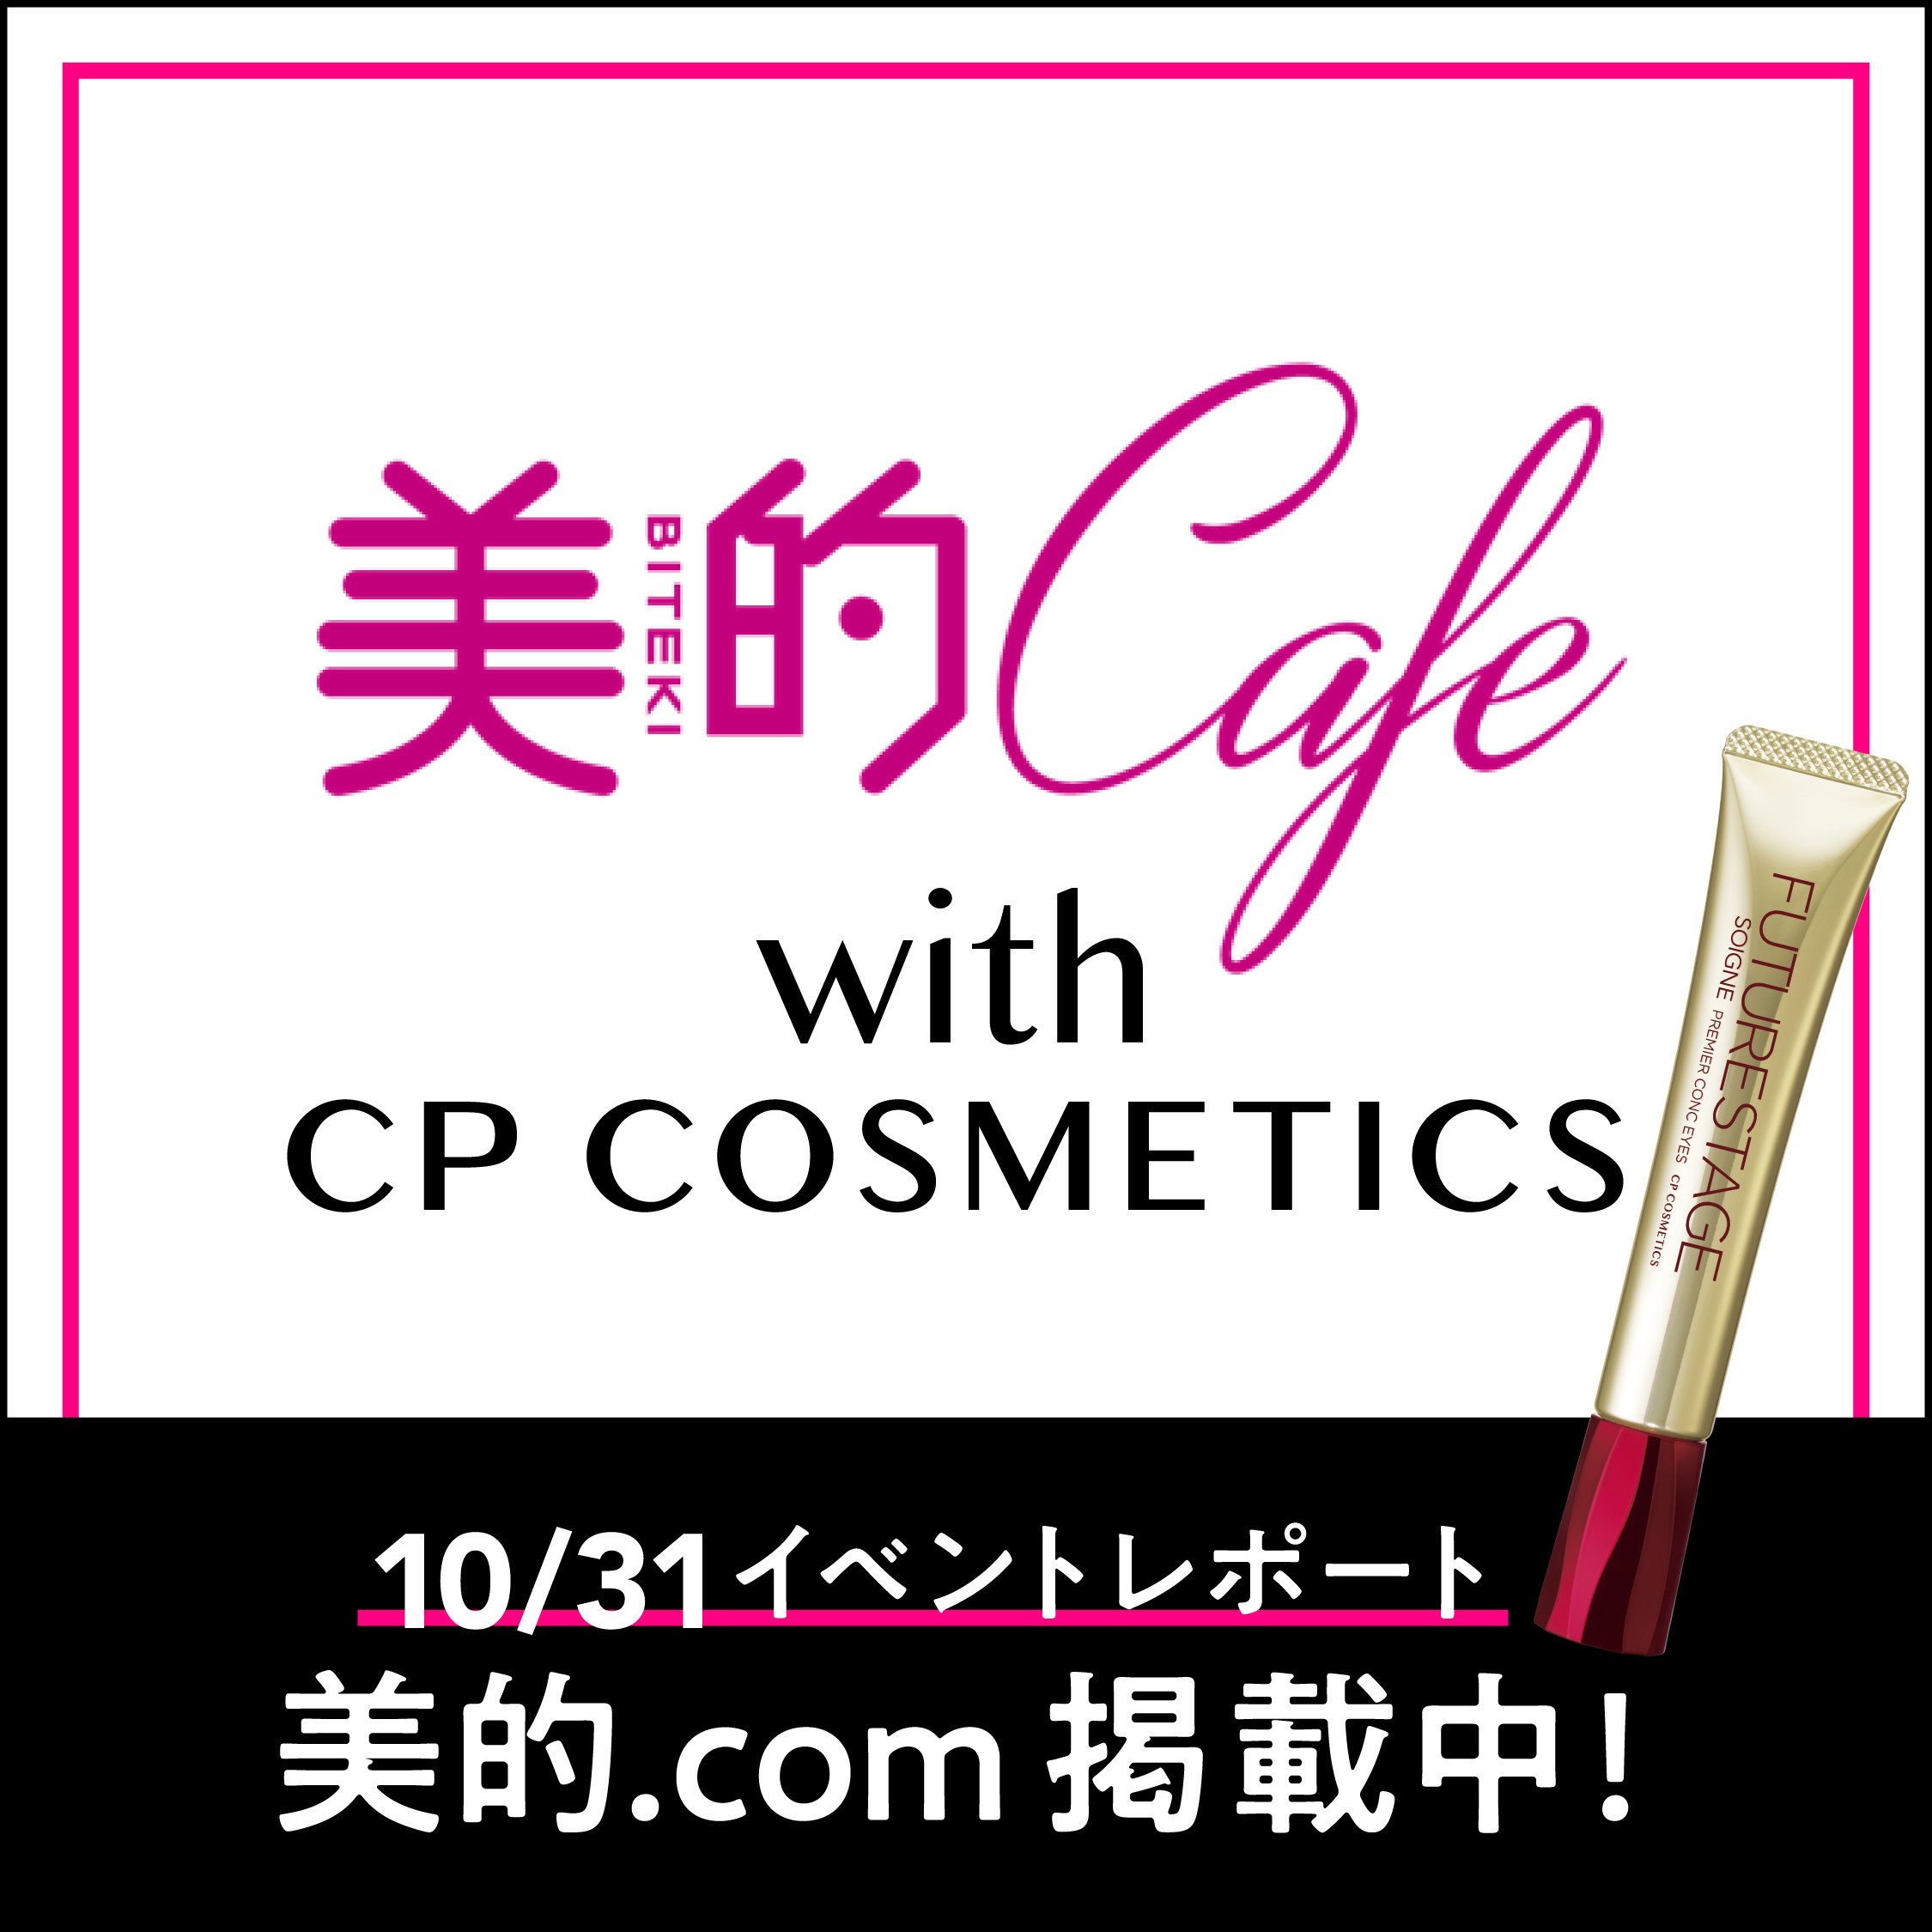 10/31に行われた "睡眠と目元”に関する 「美的Cafe with CPコスメティクス」のイベントレポートが公開されました！